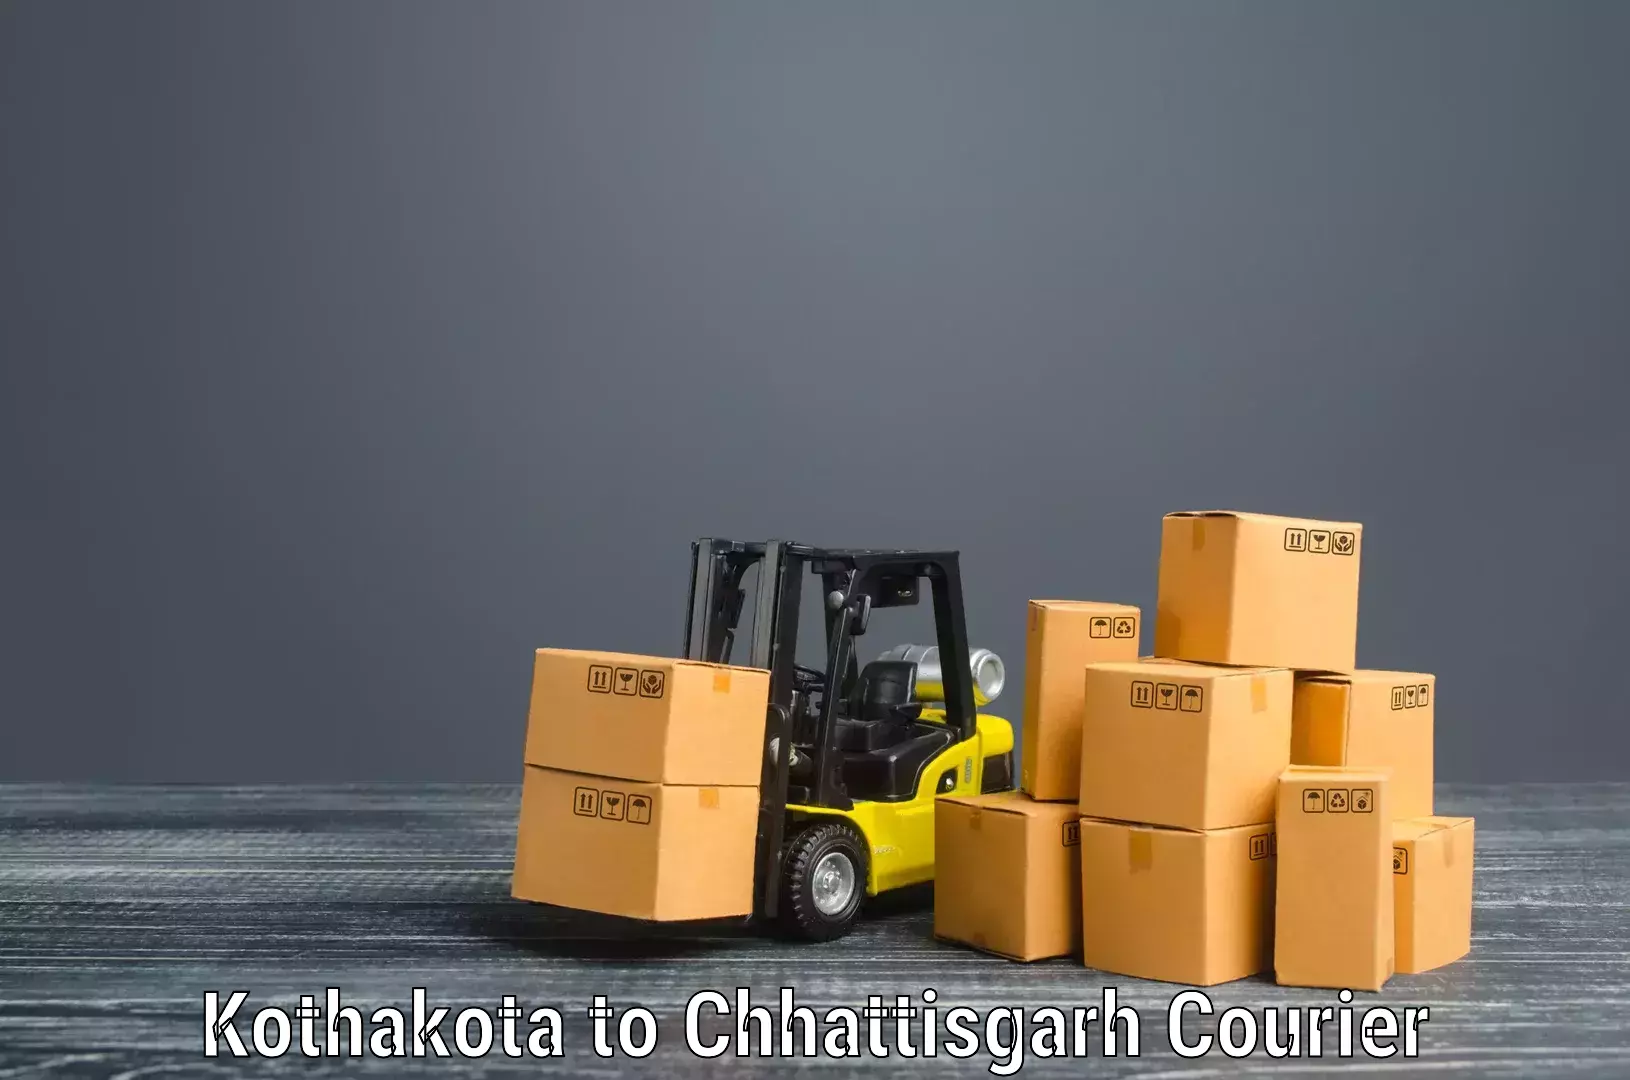 Furniture moving experts Kothakota to Raipur